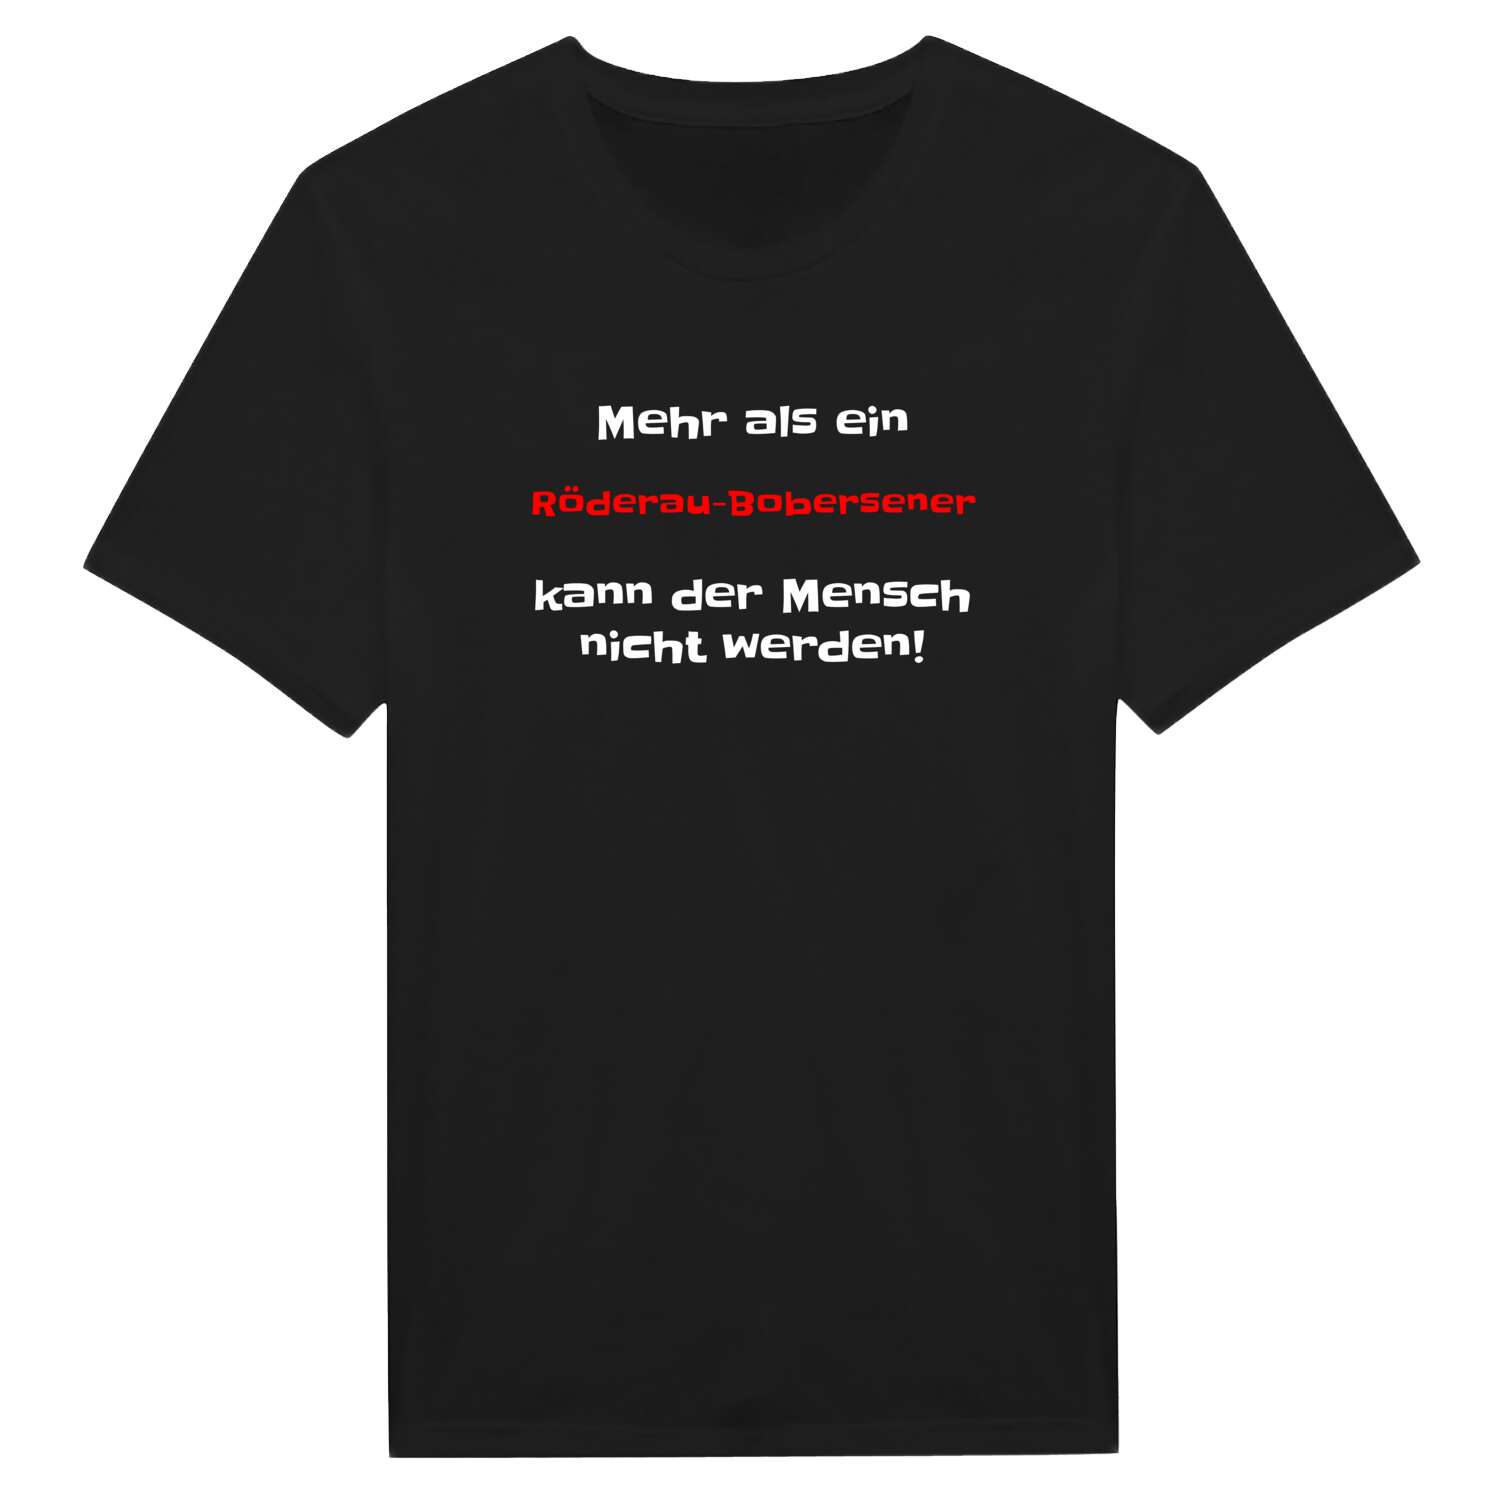 Röderau-Bobersen T-Shirt »Mehr als ein«